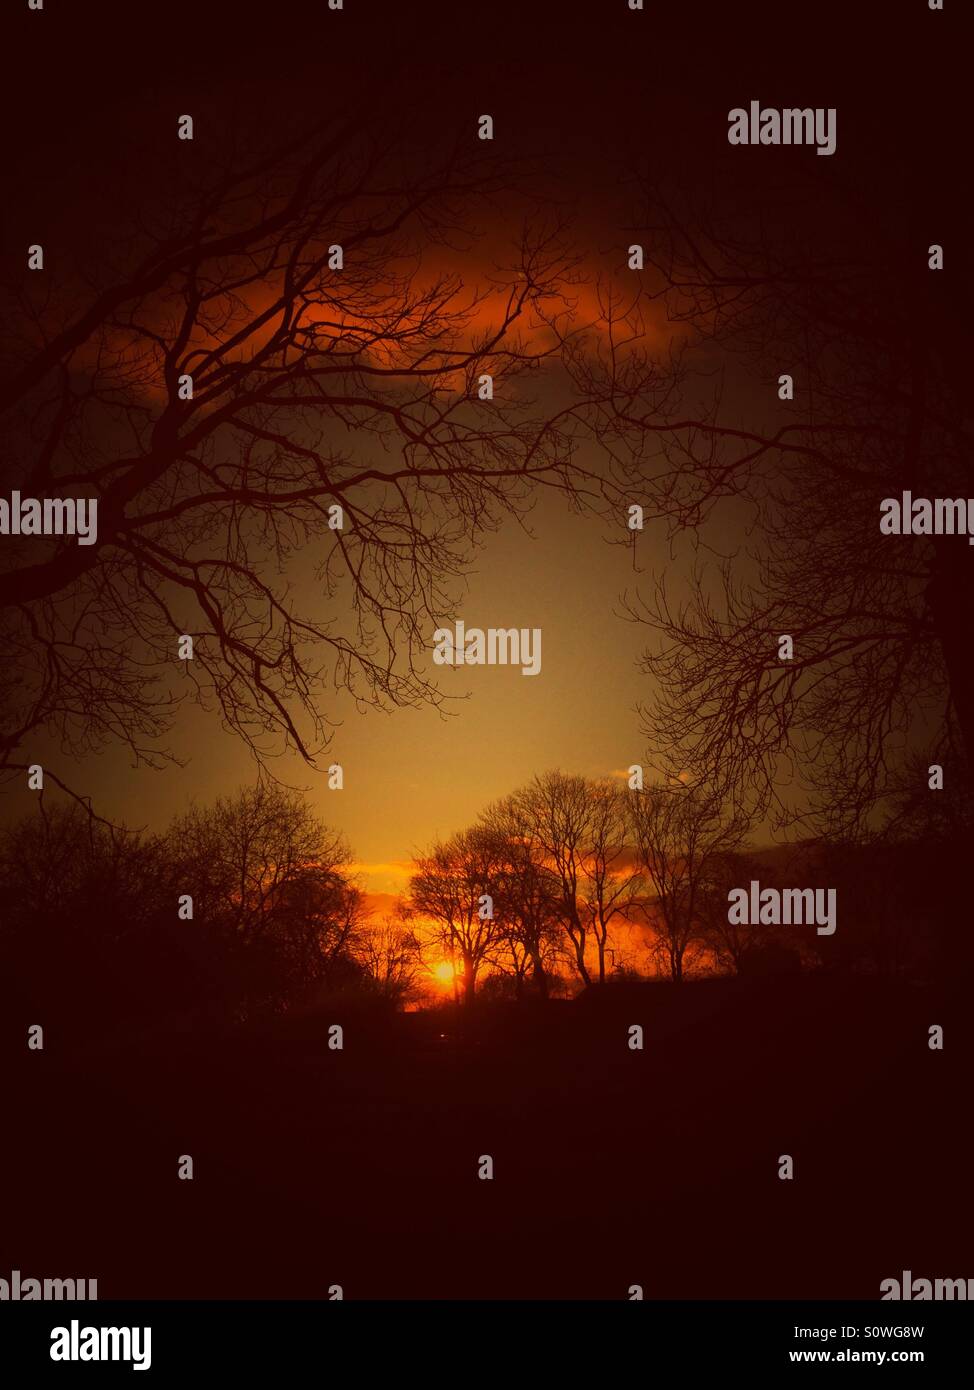 La silhouette des arbres au coucher du soleil Banque D'Images